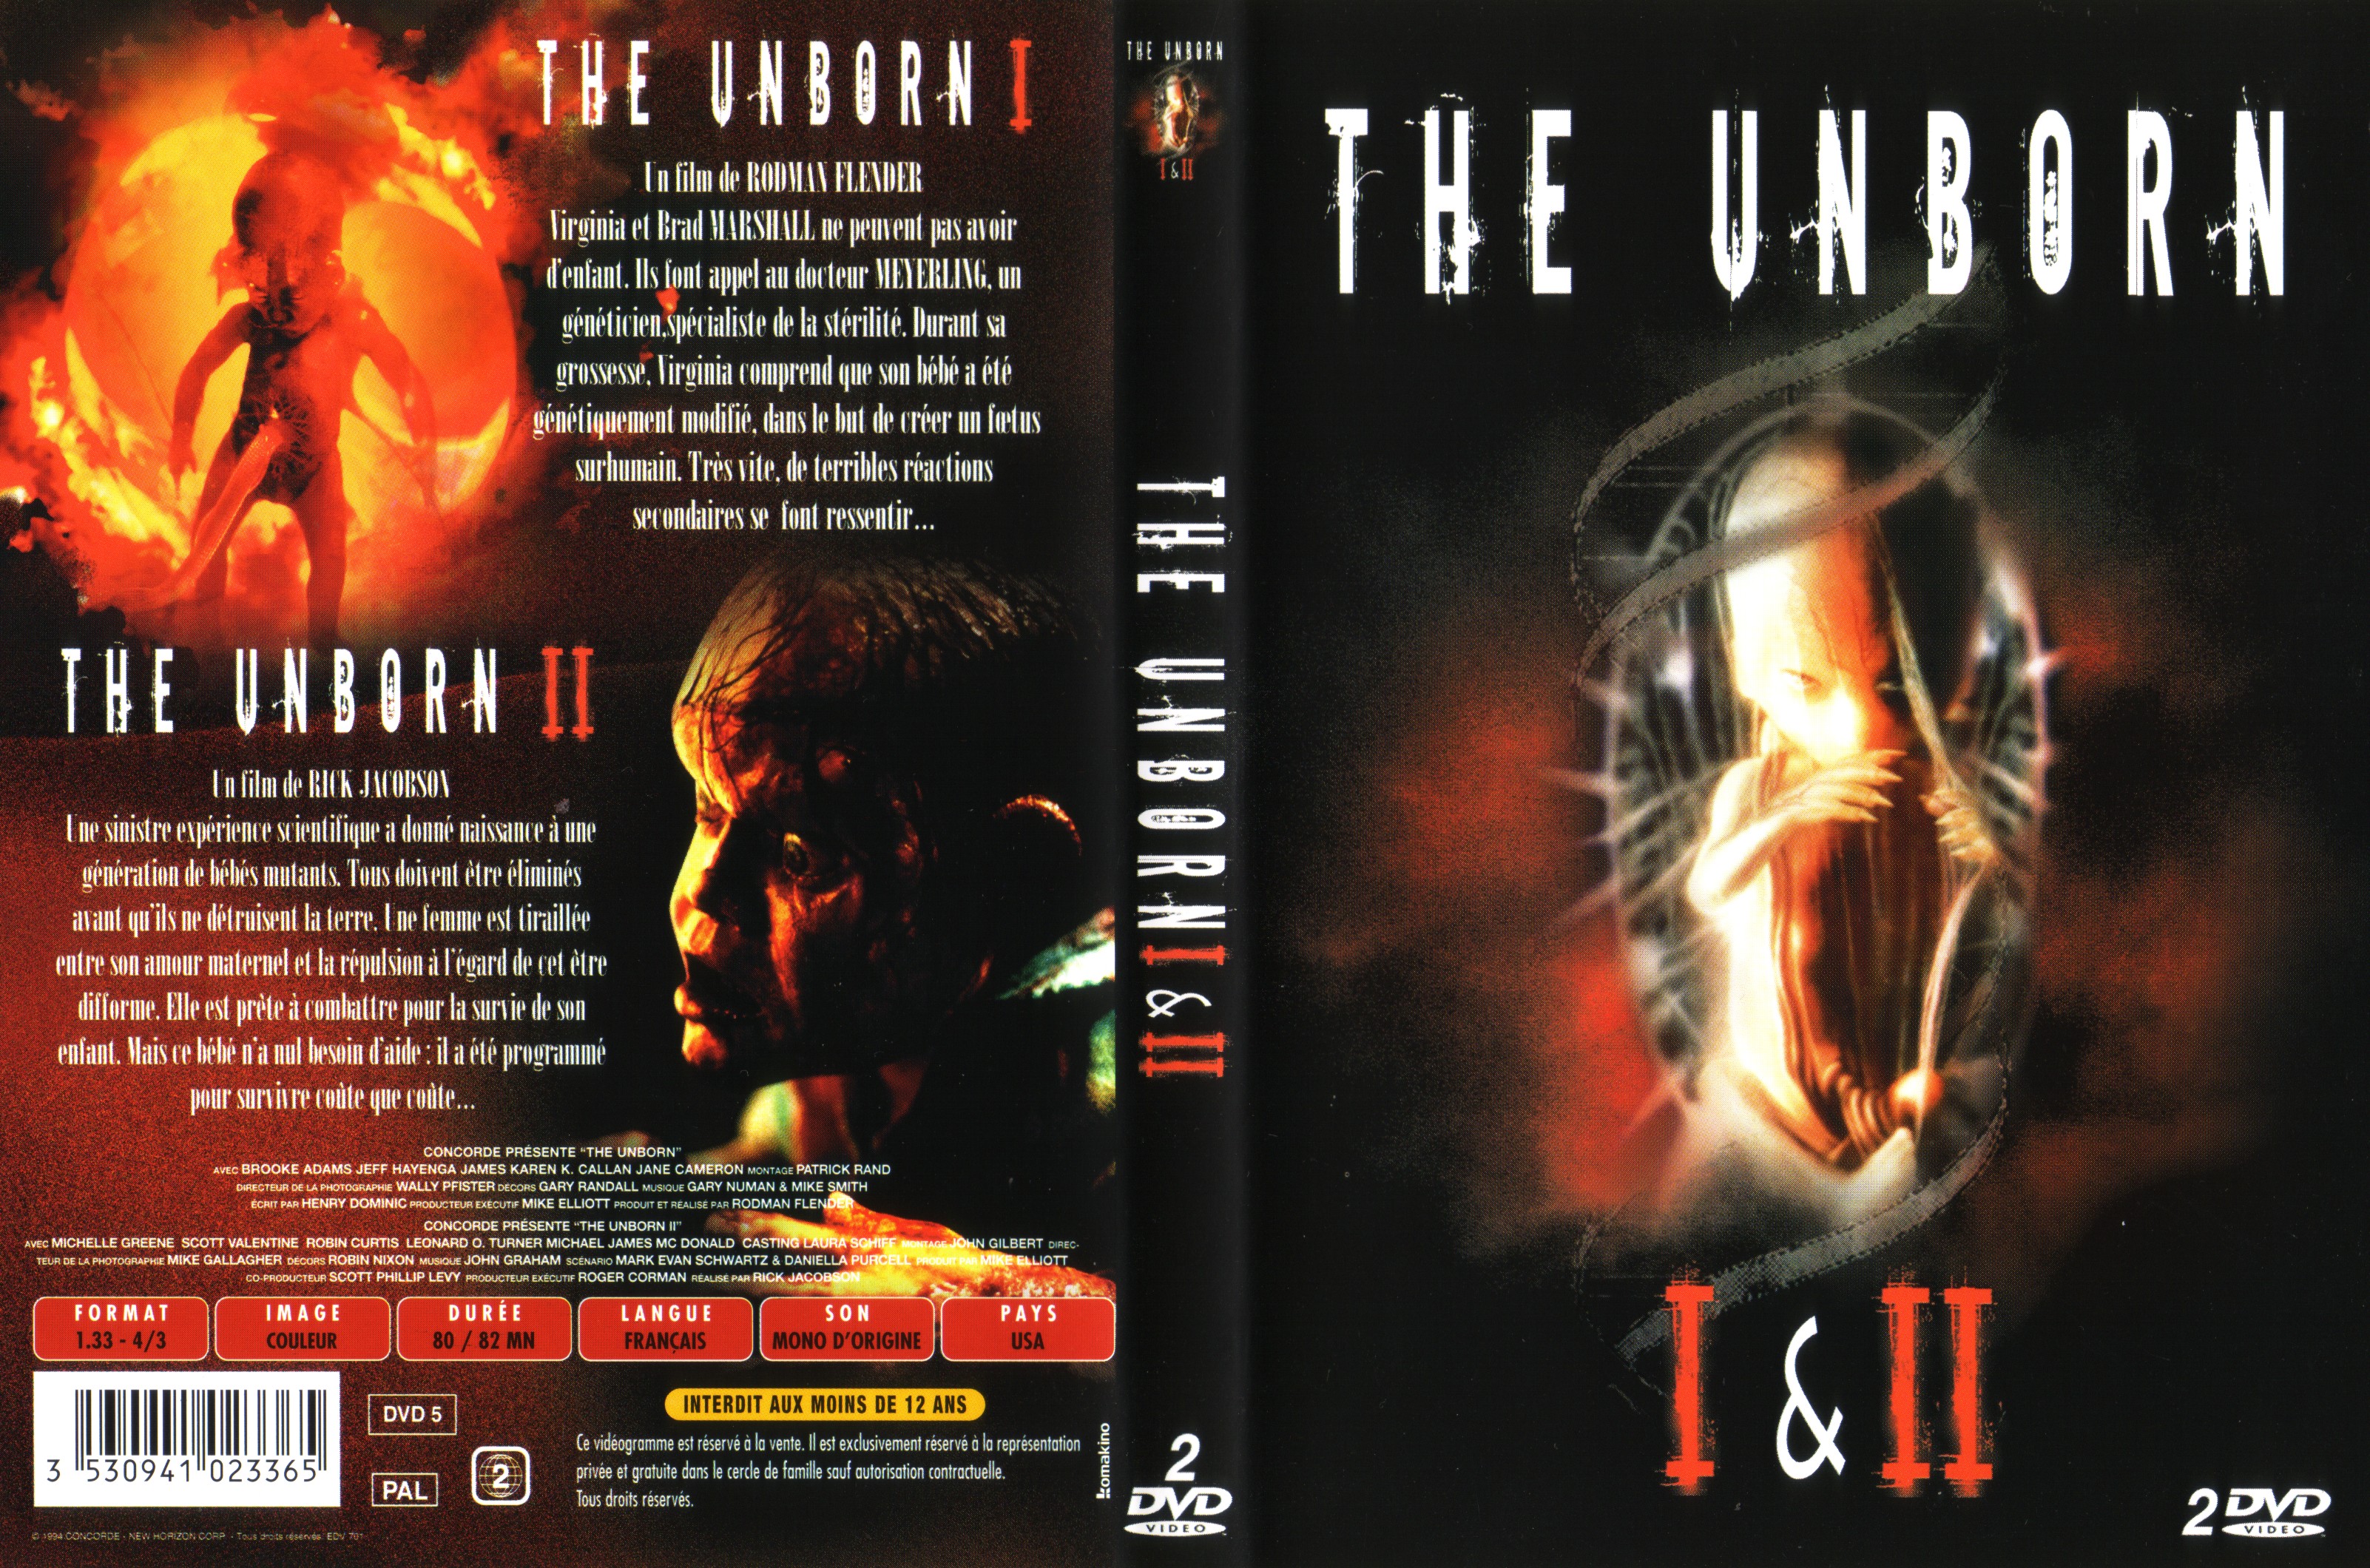 Jaquette DVD The unborn 1 et 2